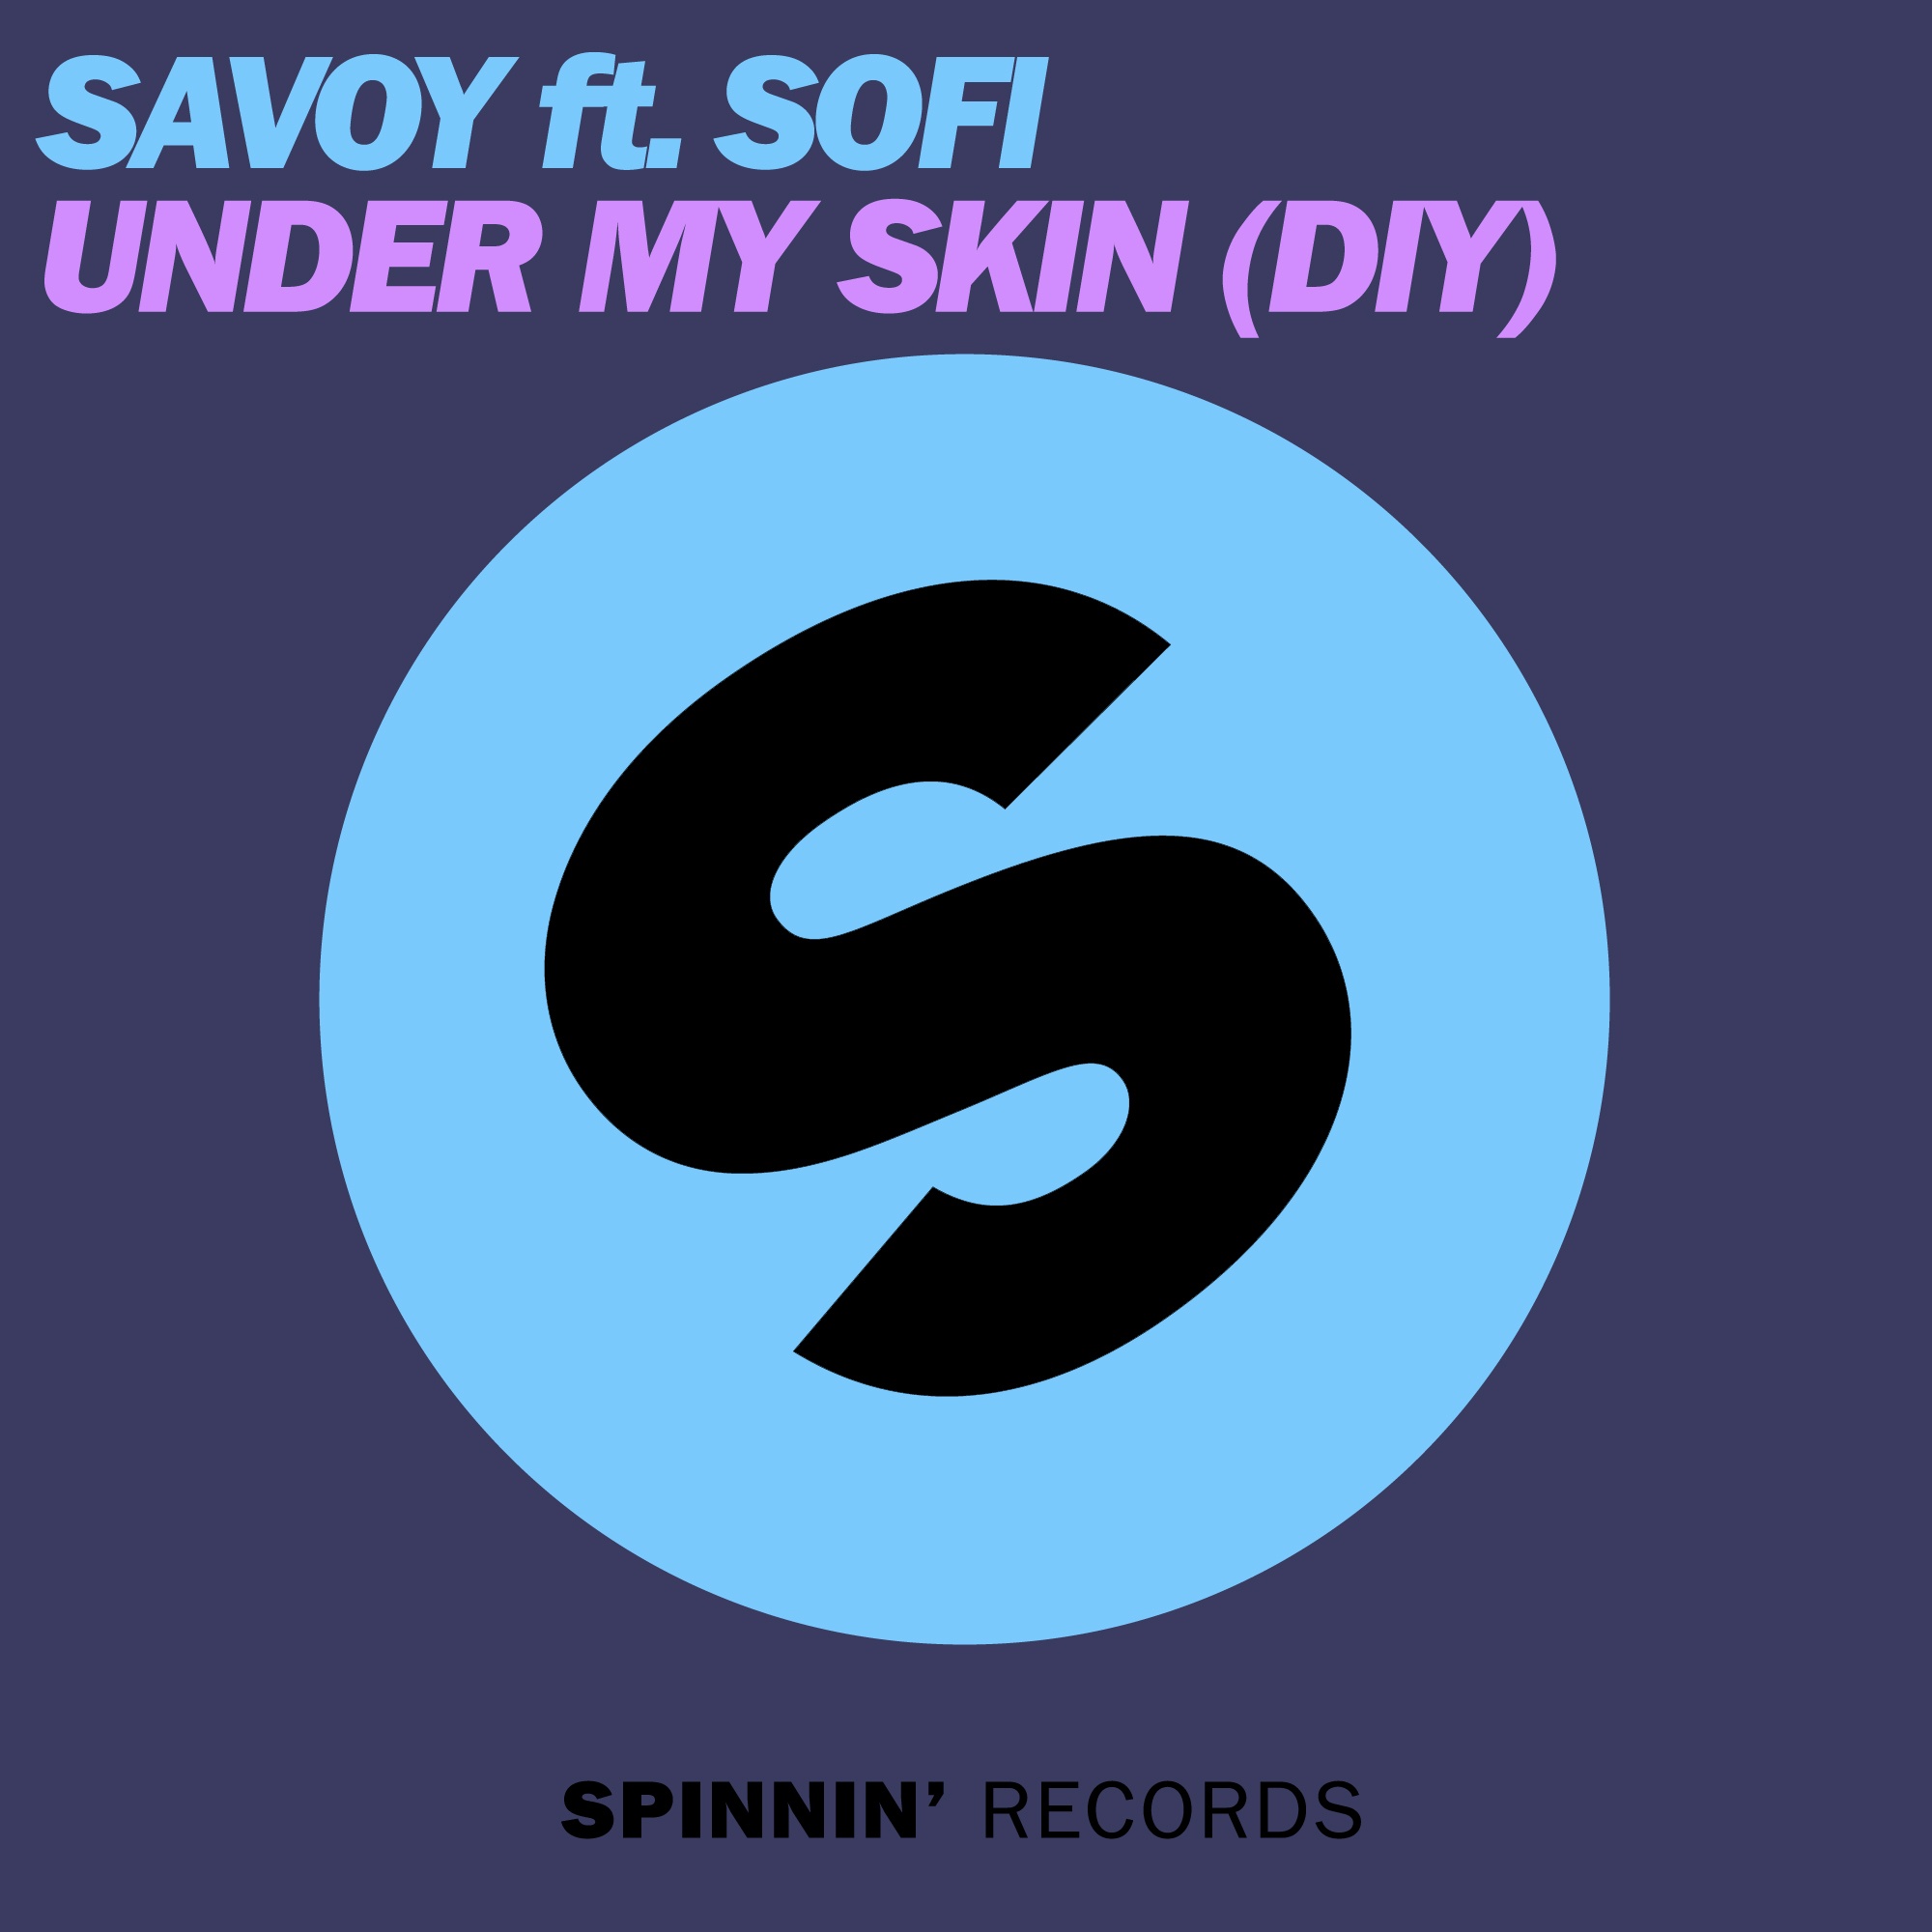 Under My Skin (DIY) (Original Mix)